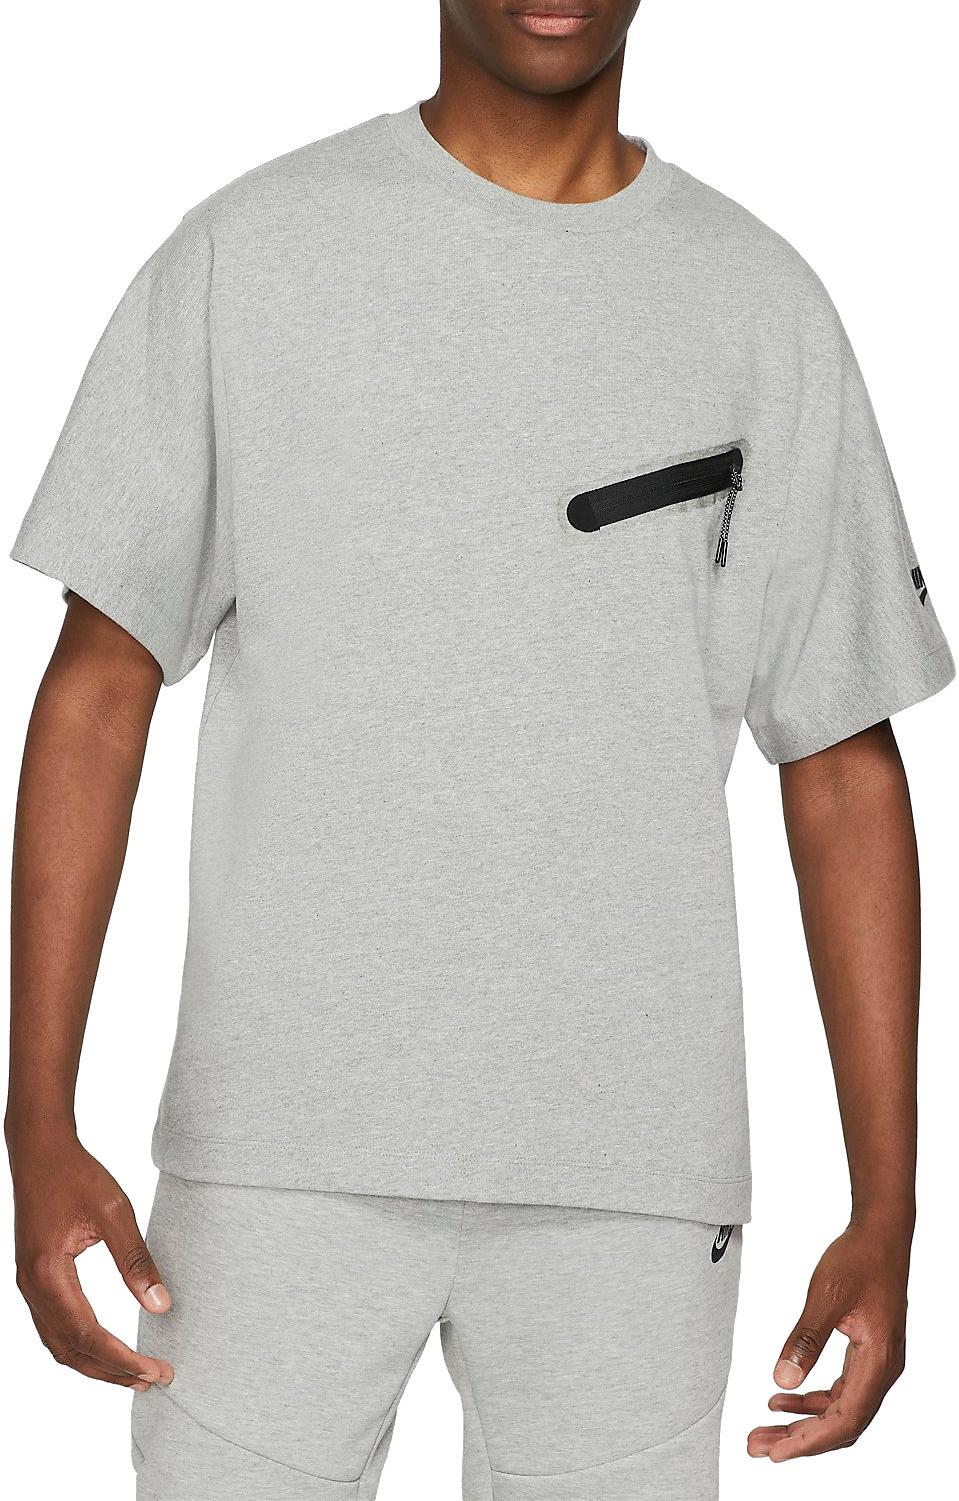 Omgeving aanvaarden gebrek T-shirt Nike Sportswear Dri-FIT Tech Essentials Men s Short-Sleeve Top -  Top4Fitness.com